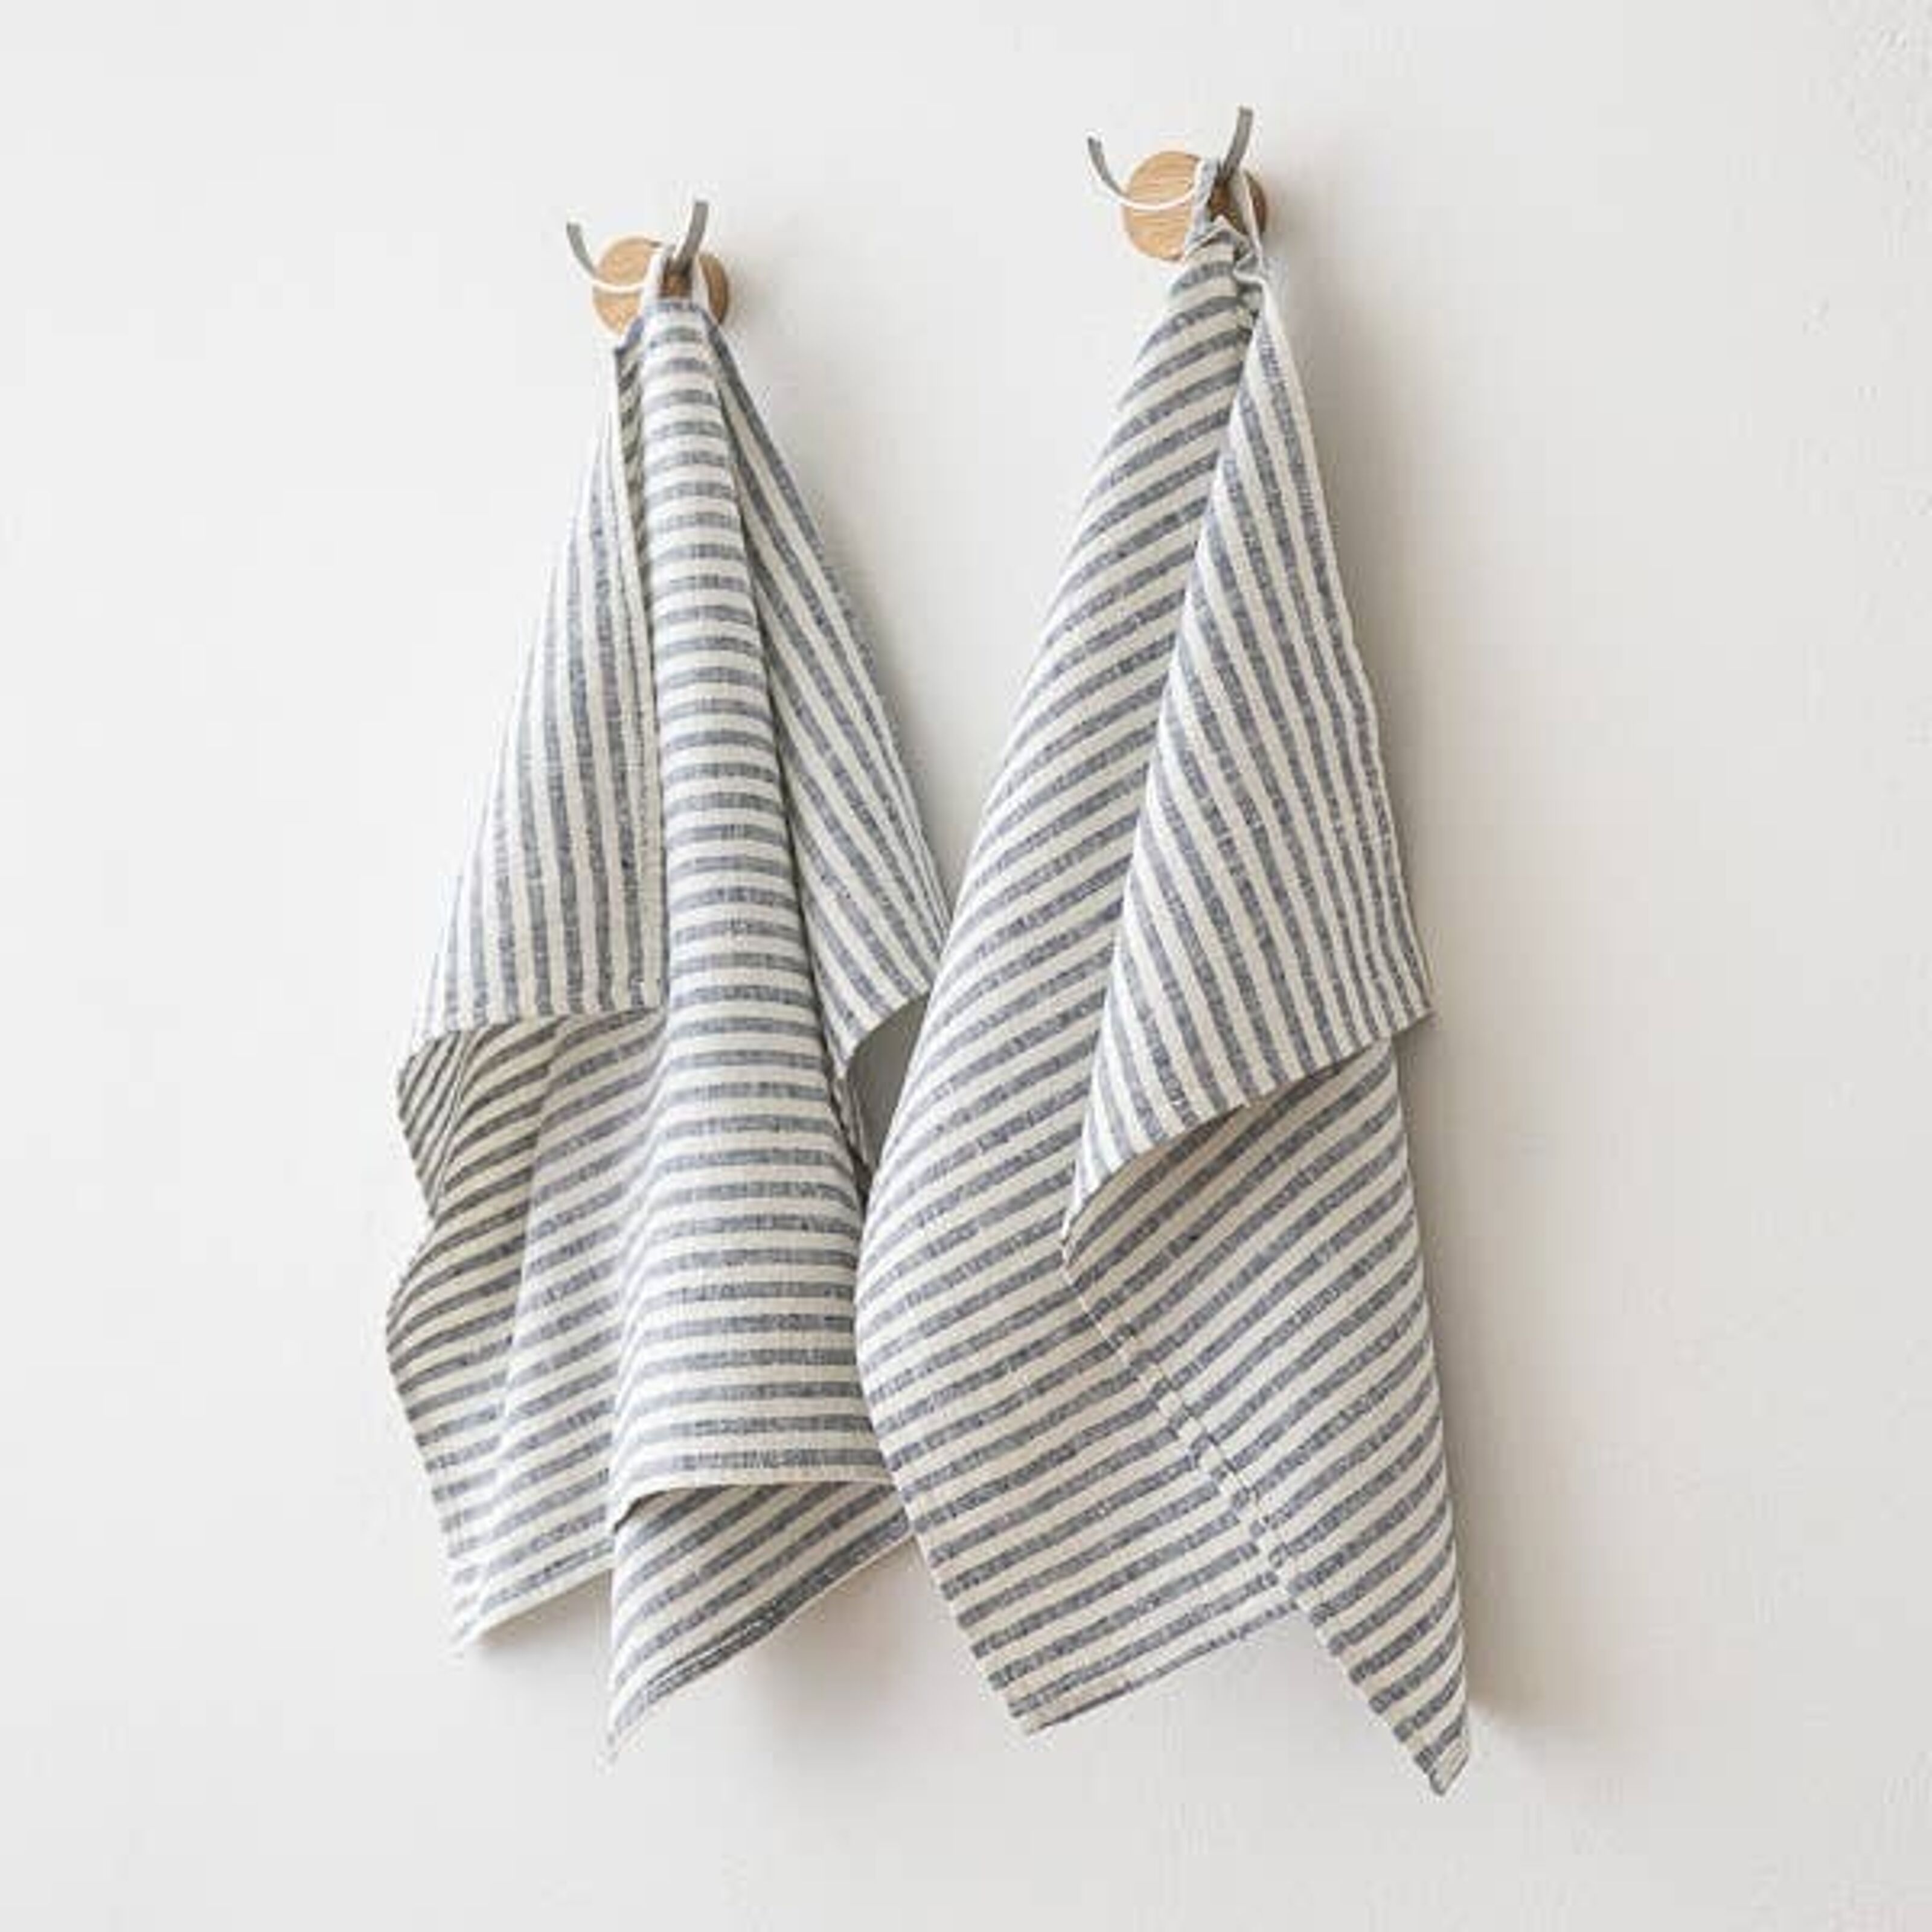 Set of 2 Black Natural Linen Tea Towels Multistripe - LinenMe